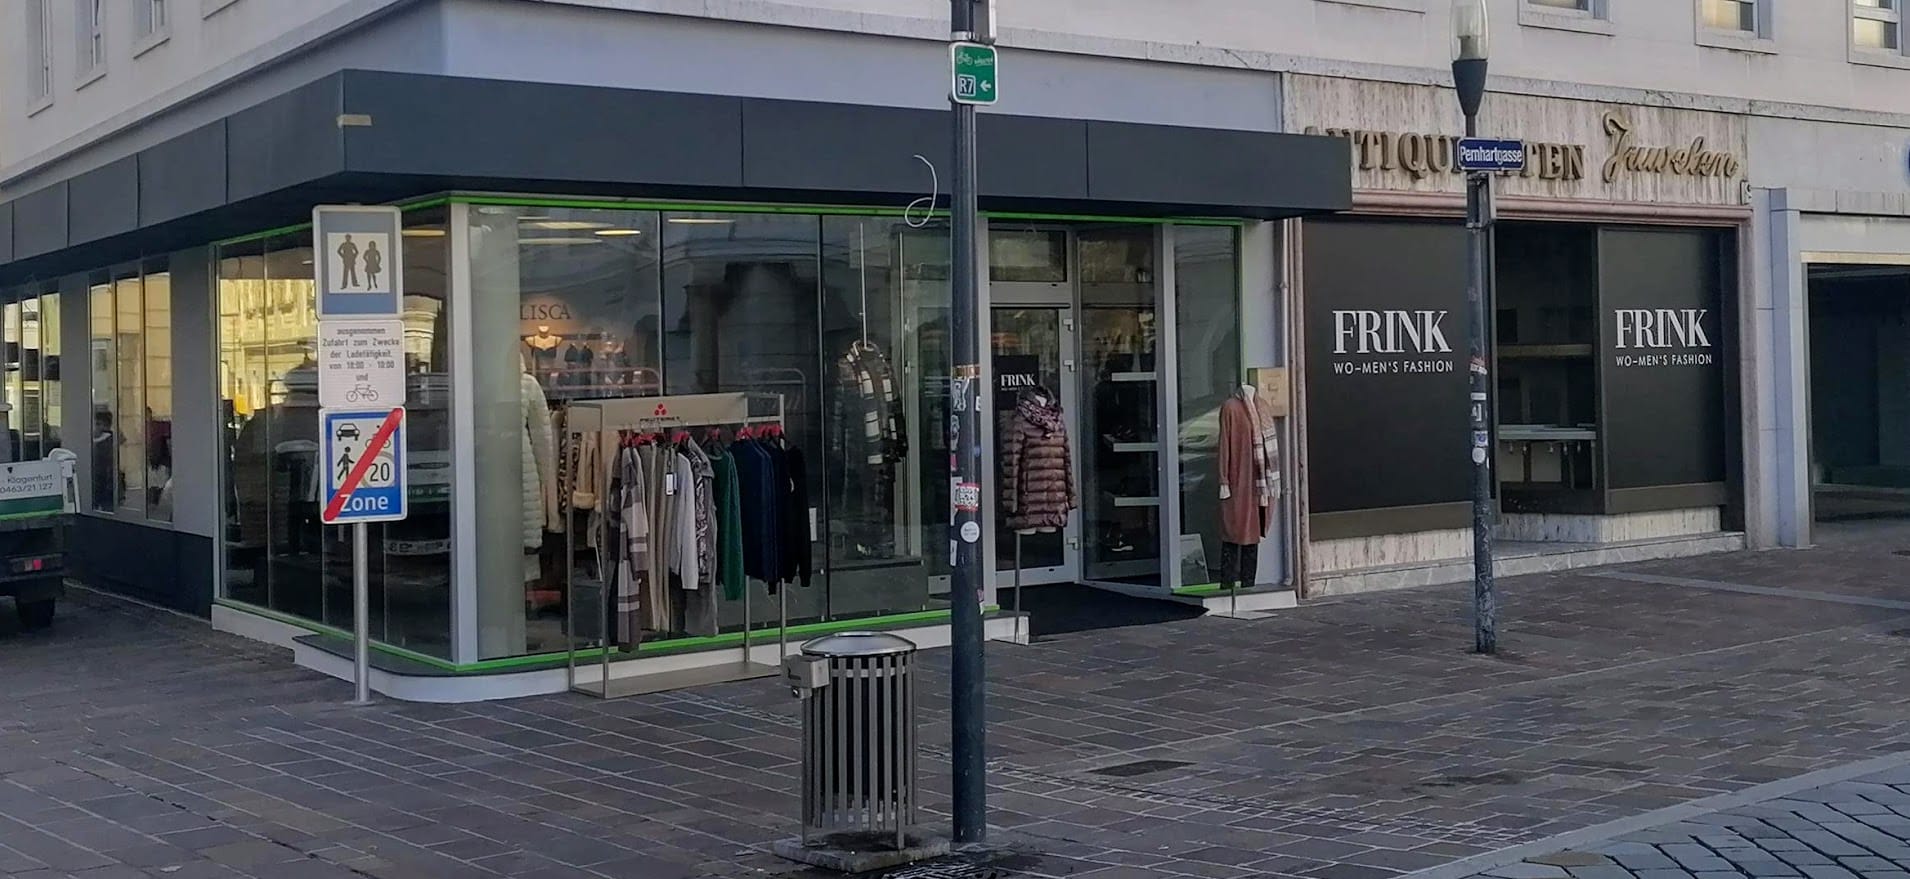 Seit kurzem ist Mode Frink in der Pernhartgasse 1, direkt am Neuen Platz zu
finden.